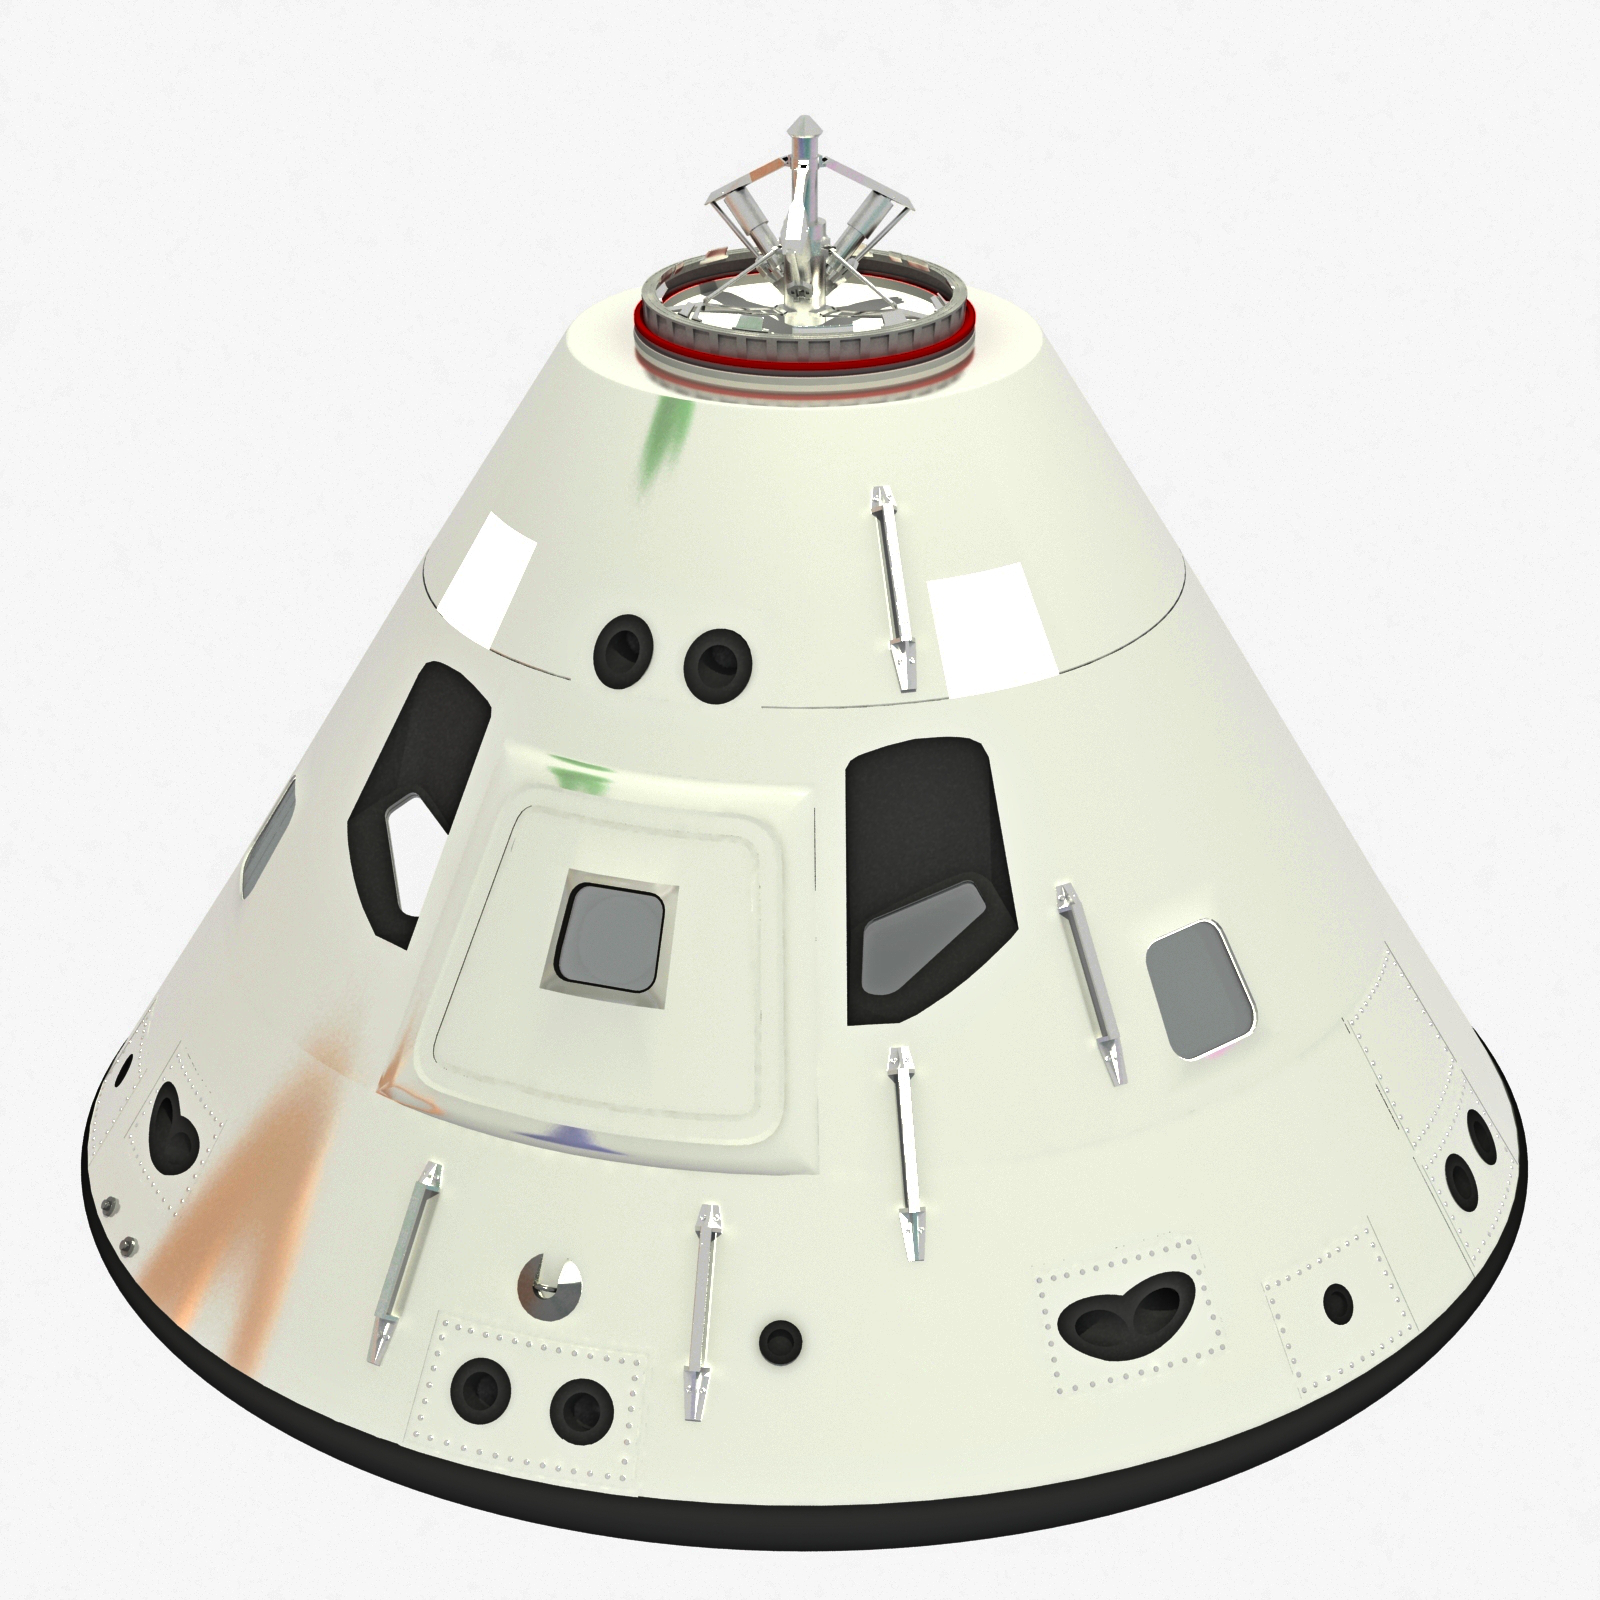 Apollo Command Module